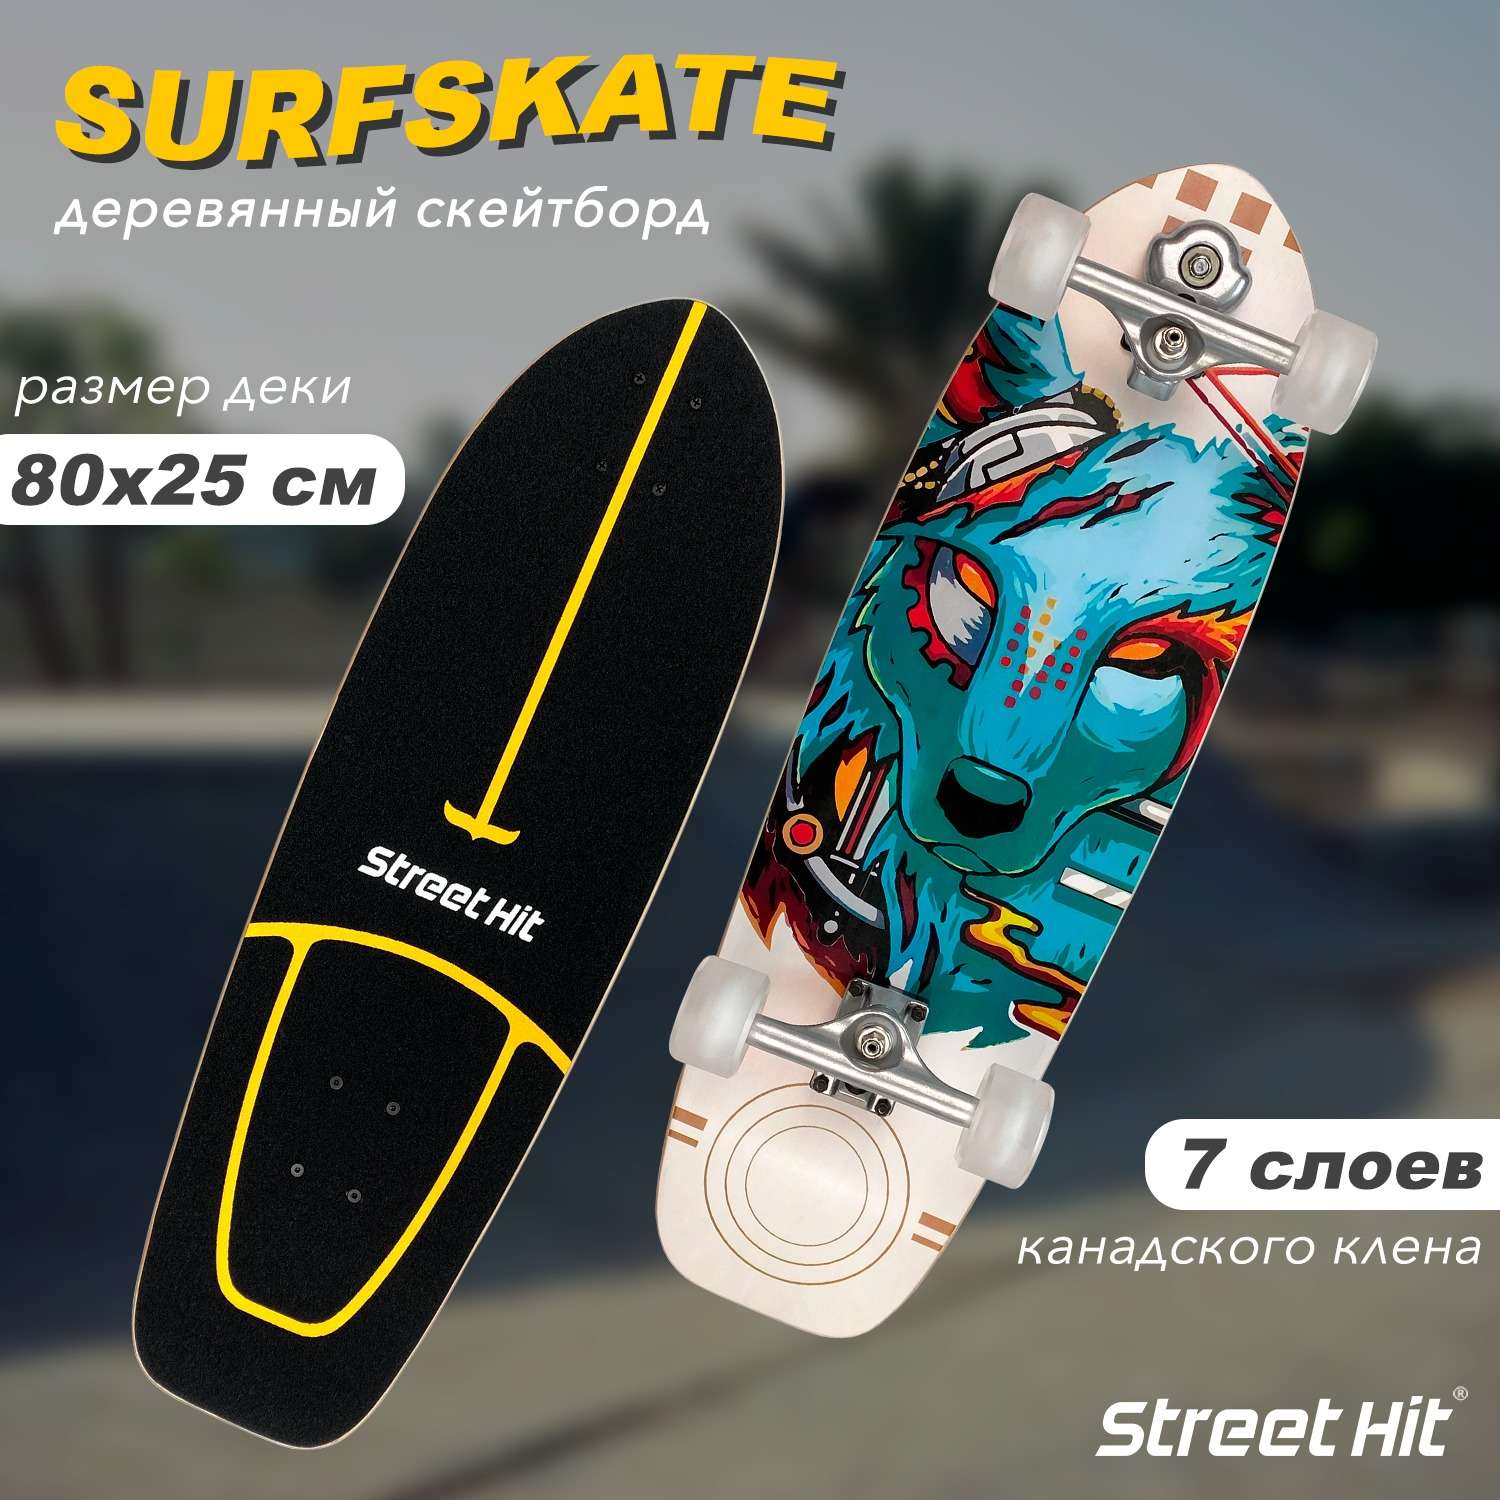 Скейтборд Street Hit деревянный SurfSkate CYBERFOX со светящимися колесами - фото 1